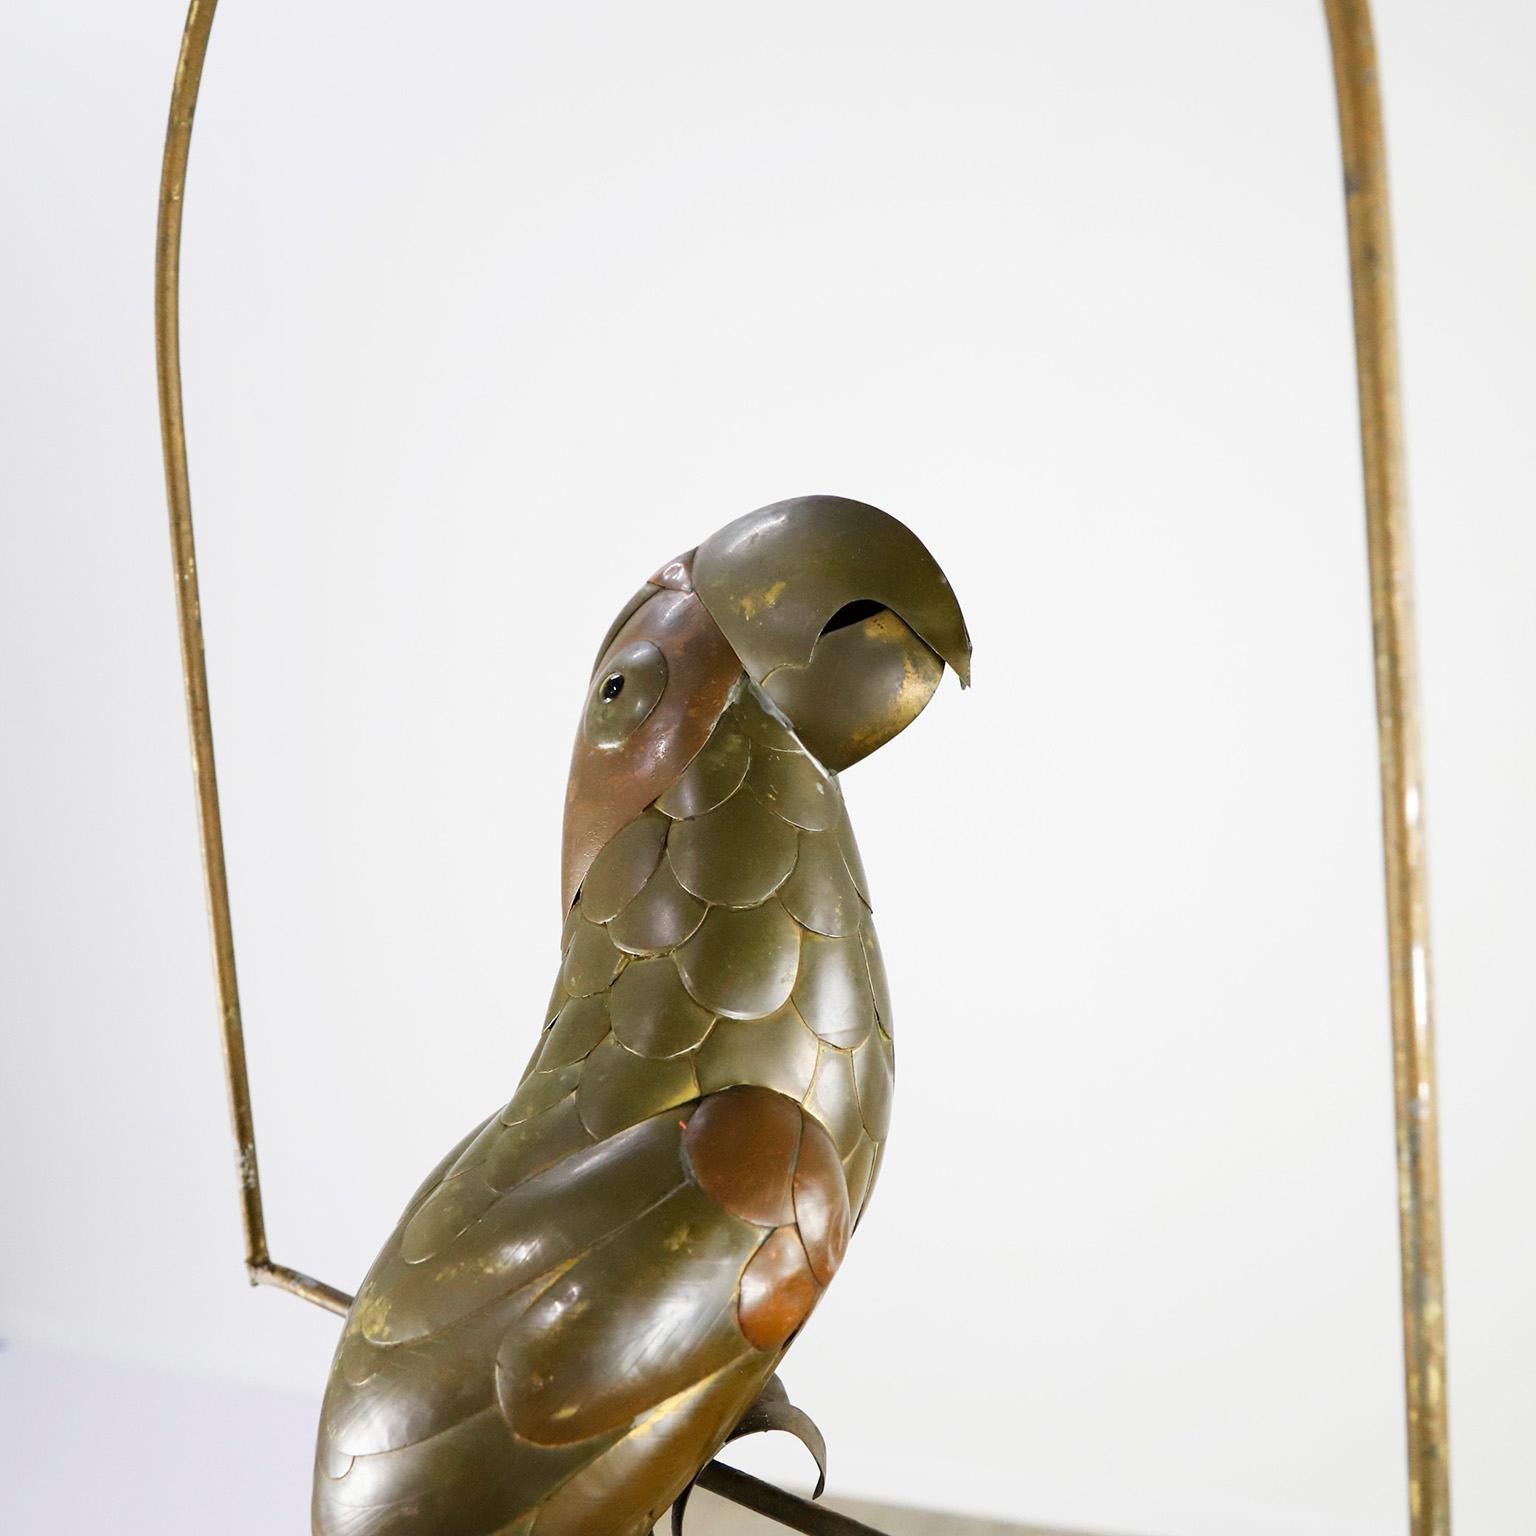 Papagei aus Kupfer, Messing und Aluminium auf einem Hängebügel von Sergio Bustamante, um 1960. Kopf und Schwanz sind leicht beschädigt.

Sergio Bustamante ist ein mexikanischer Künstler und Bildhauer. Er begann mit Gemälden und Pappmaché-Figuren und